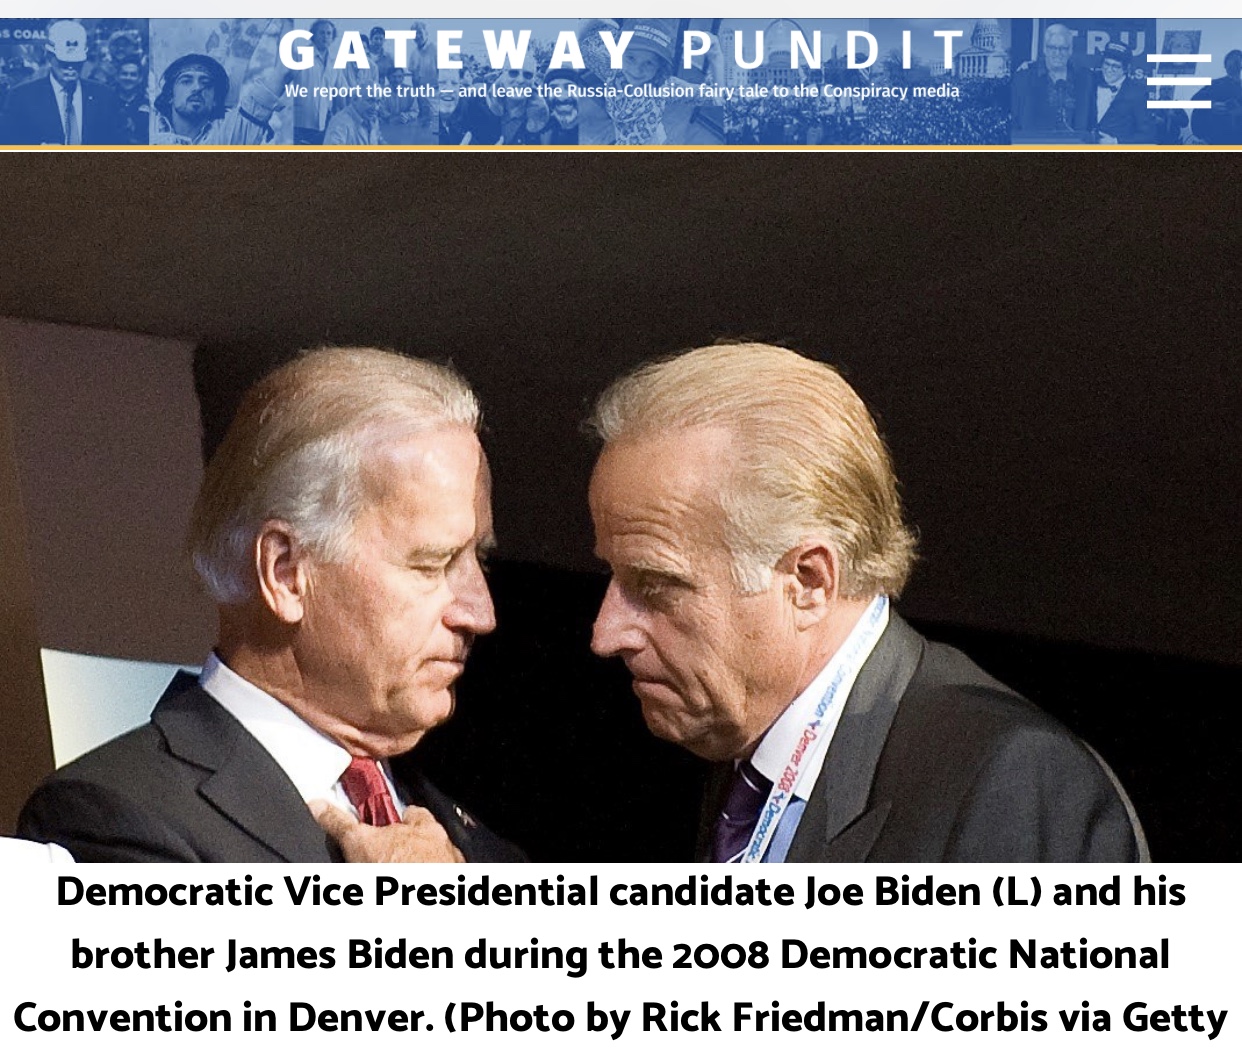 Joe Biden’s Brother James Biden Also Under Federal Investigation: Report